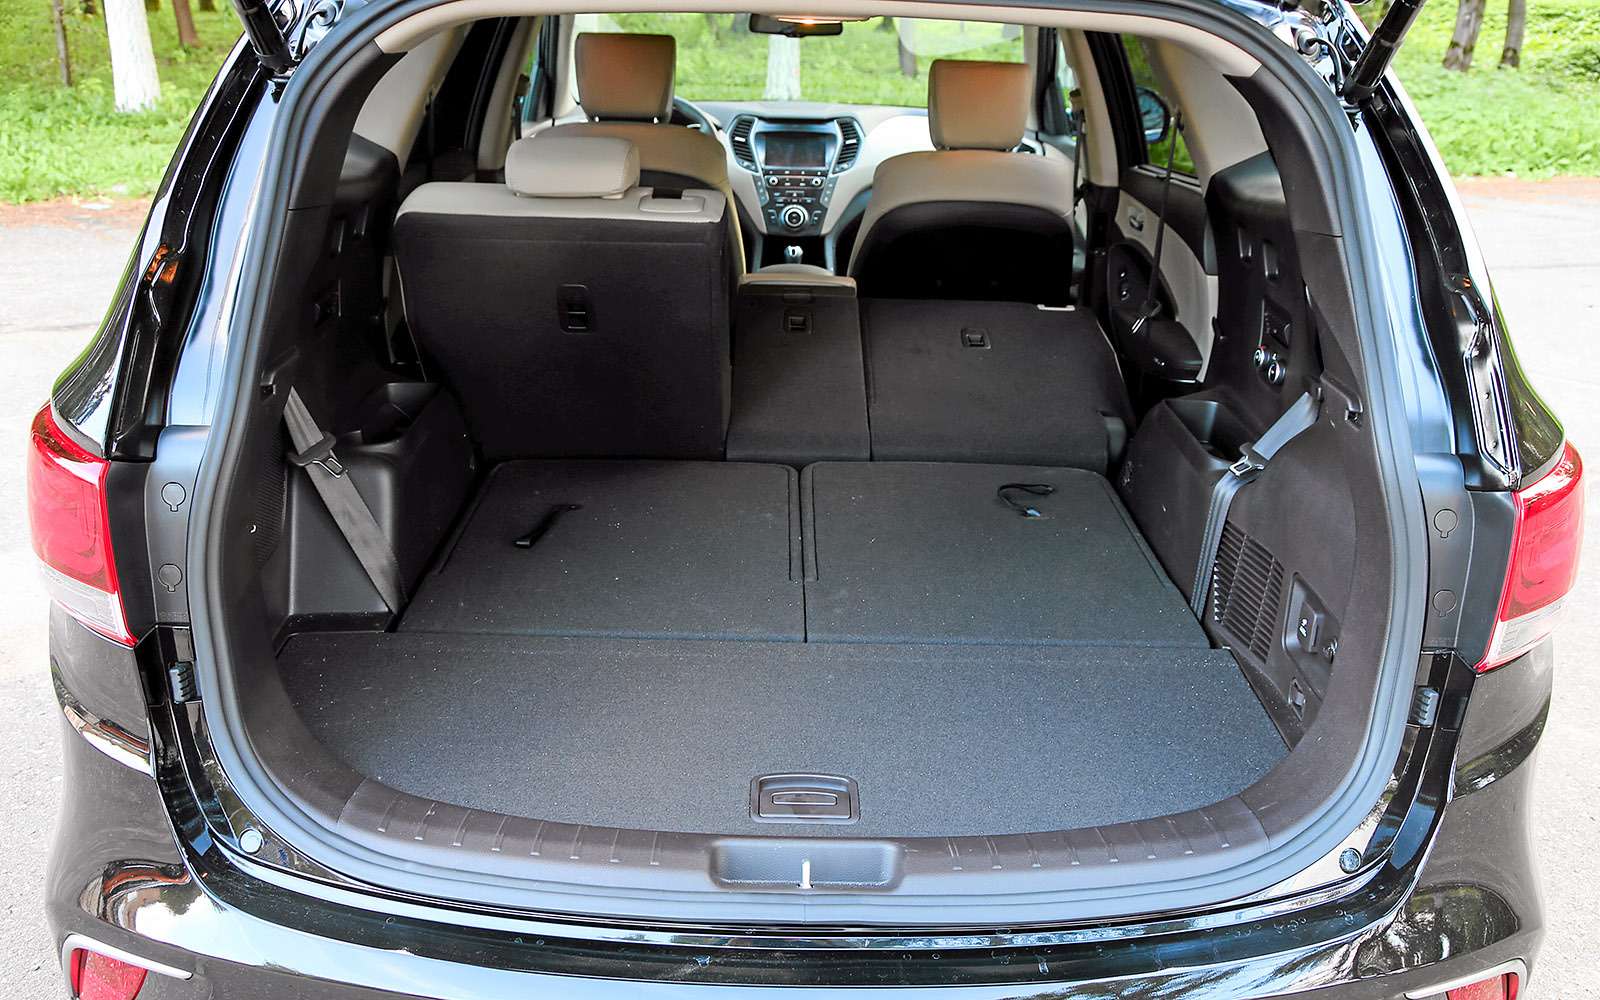 У Hyundai – самый объемный багажник (524 л) с небольшой погрузочной высотой. Шторку можно свернуть и убрать в специальный отсек.